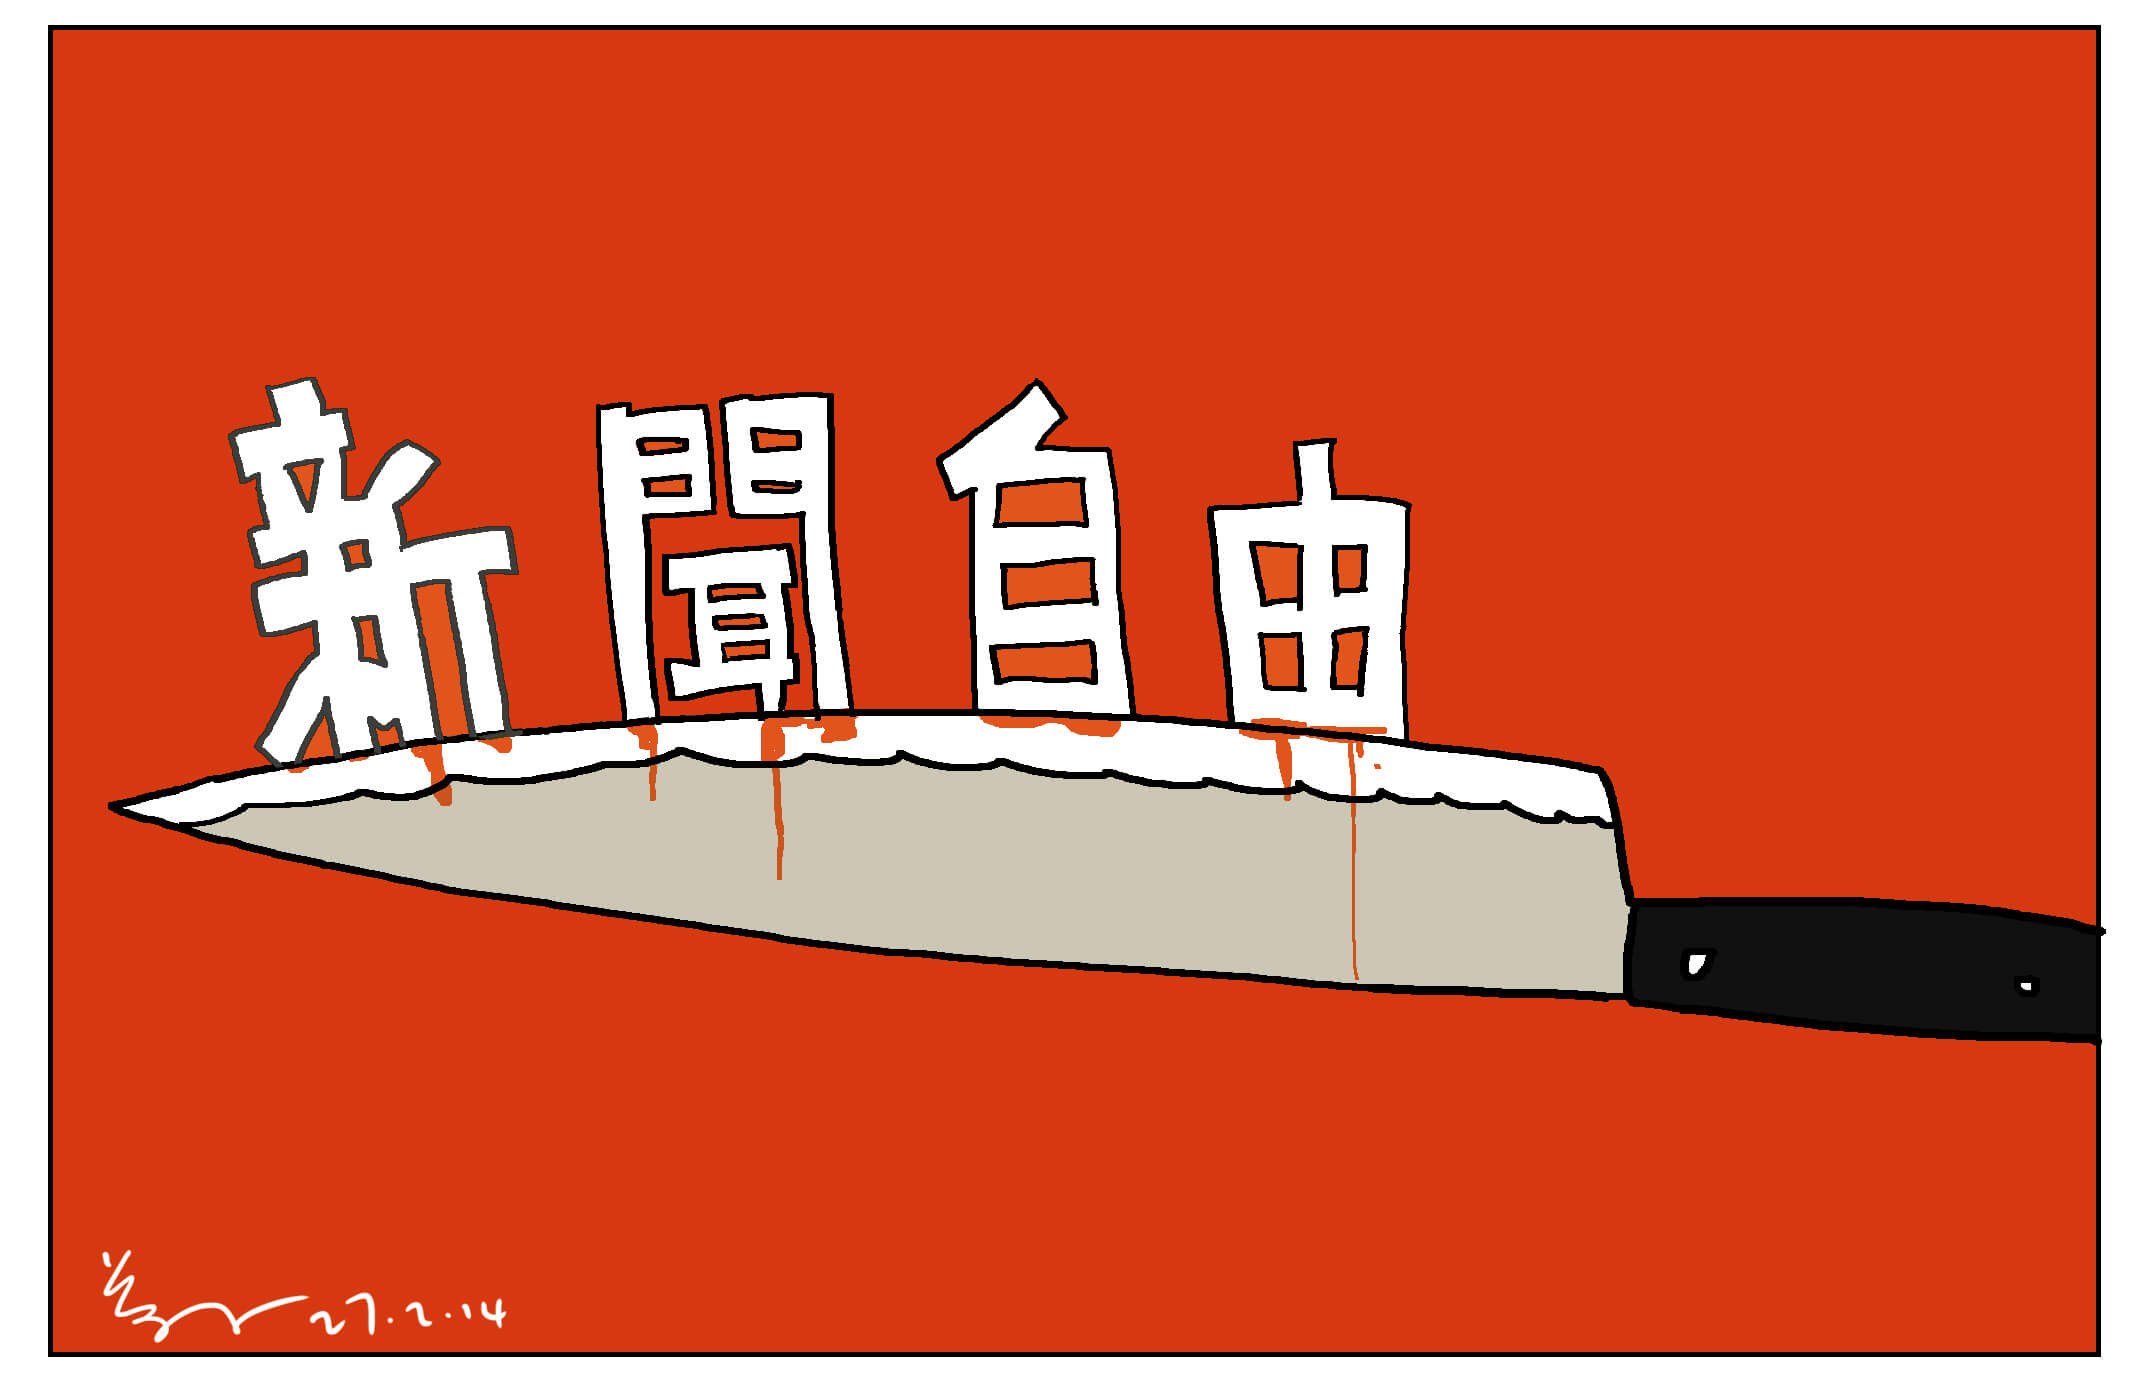 2014年2月《明報》前總編輯劉進圖被斬傷， 尊子的《新聞自由在刀上》描繪新聞自由受 嚴重威脅。 